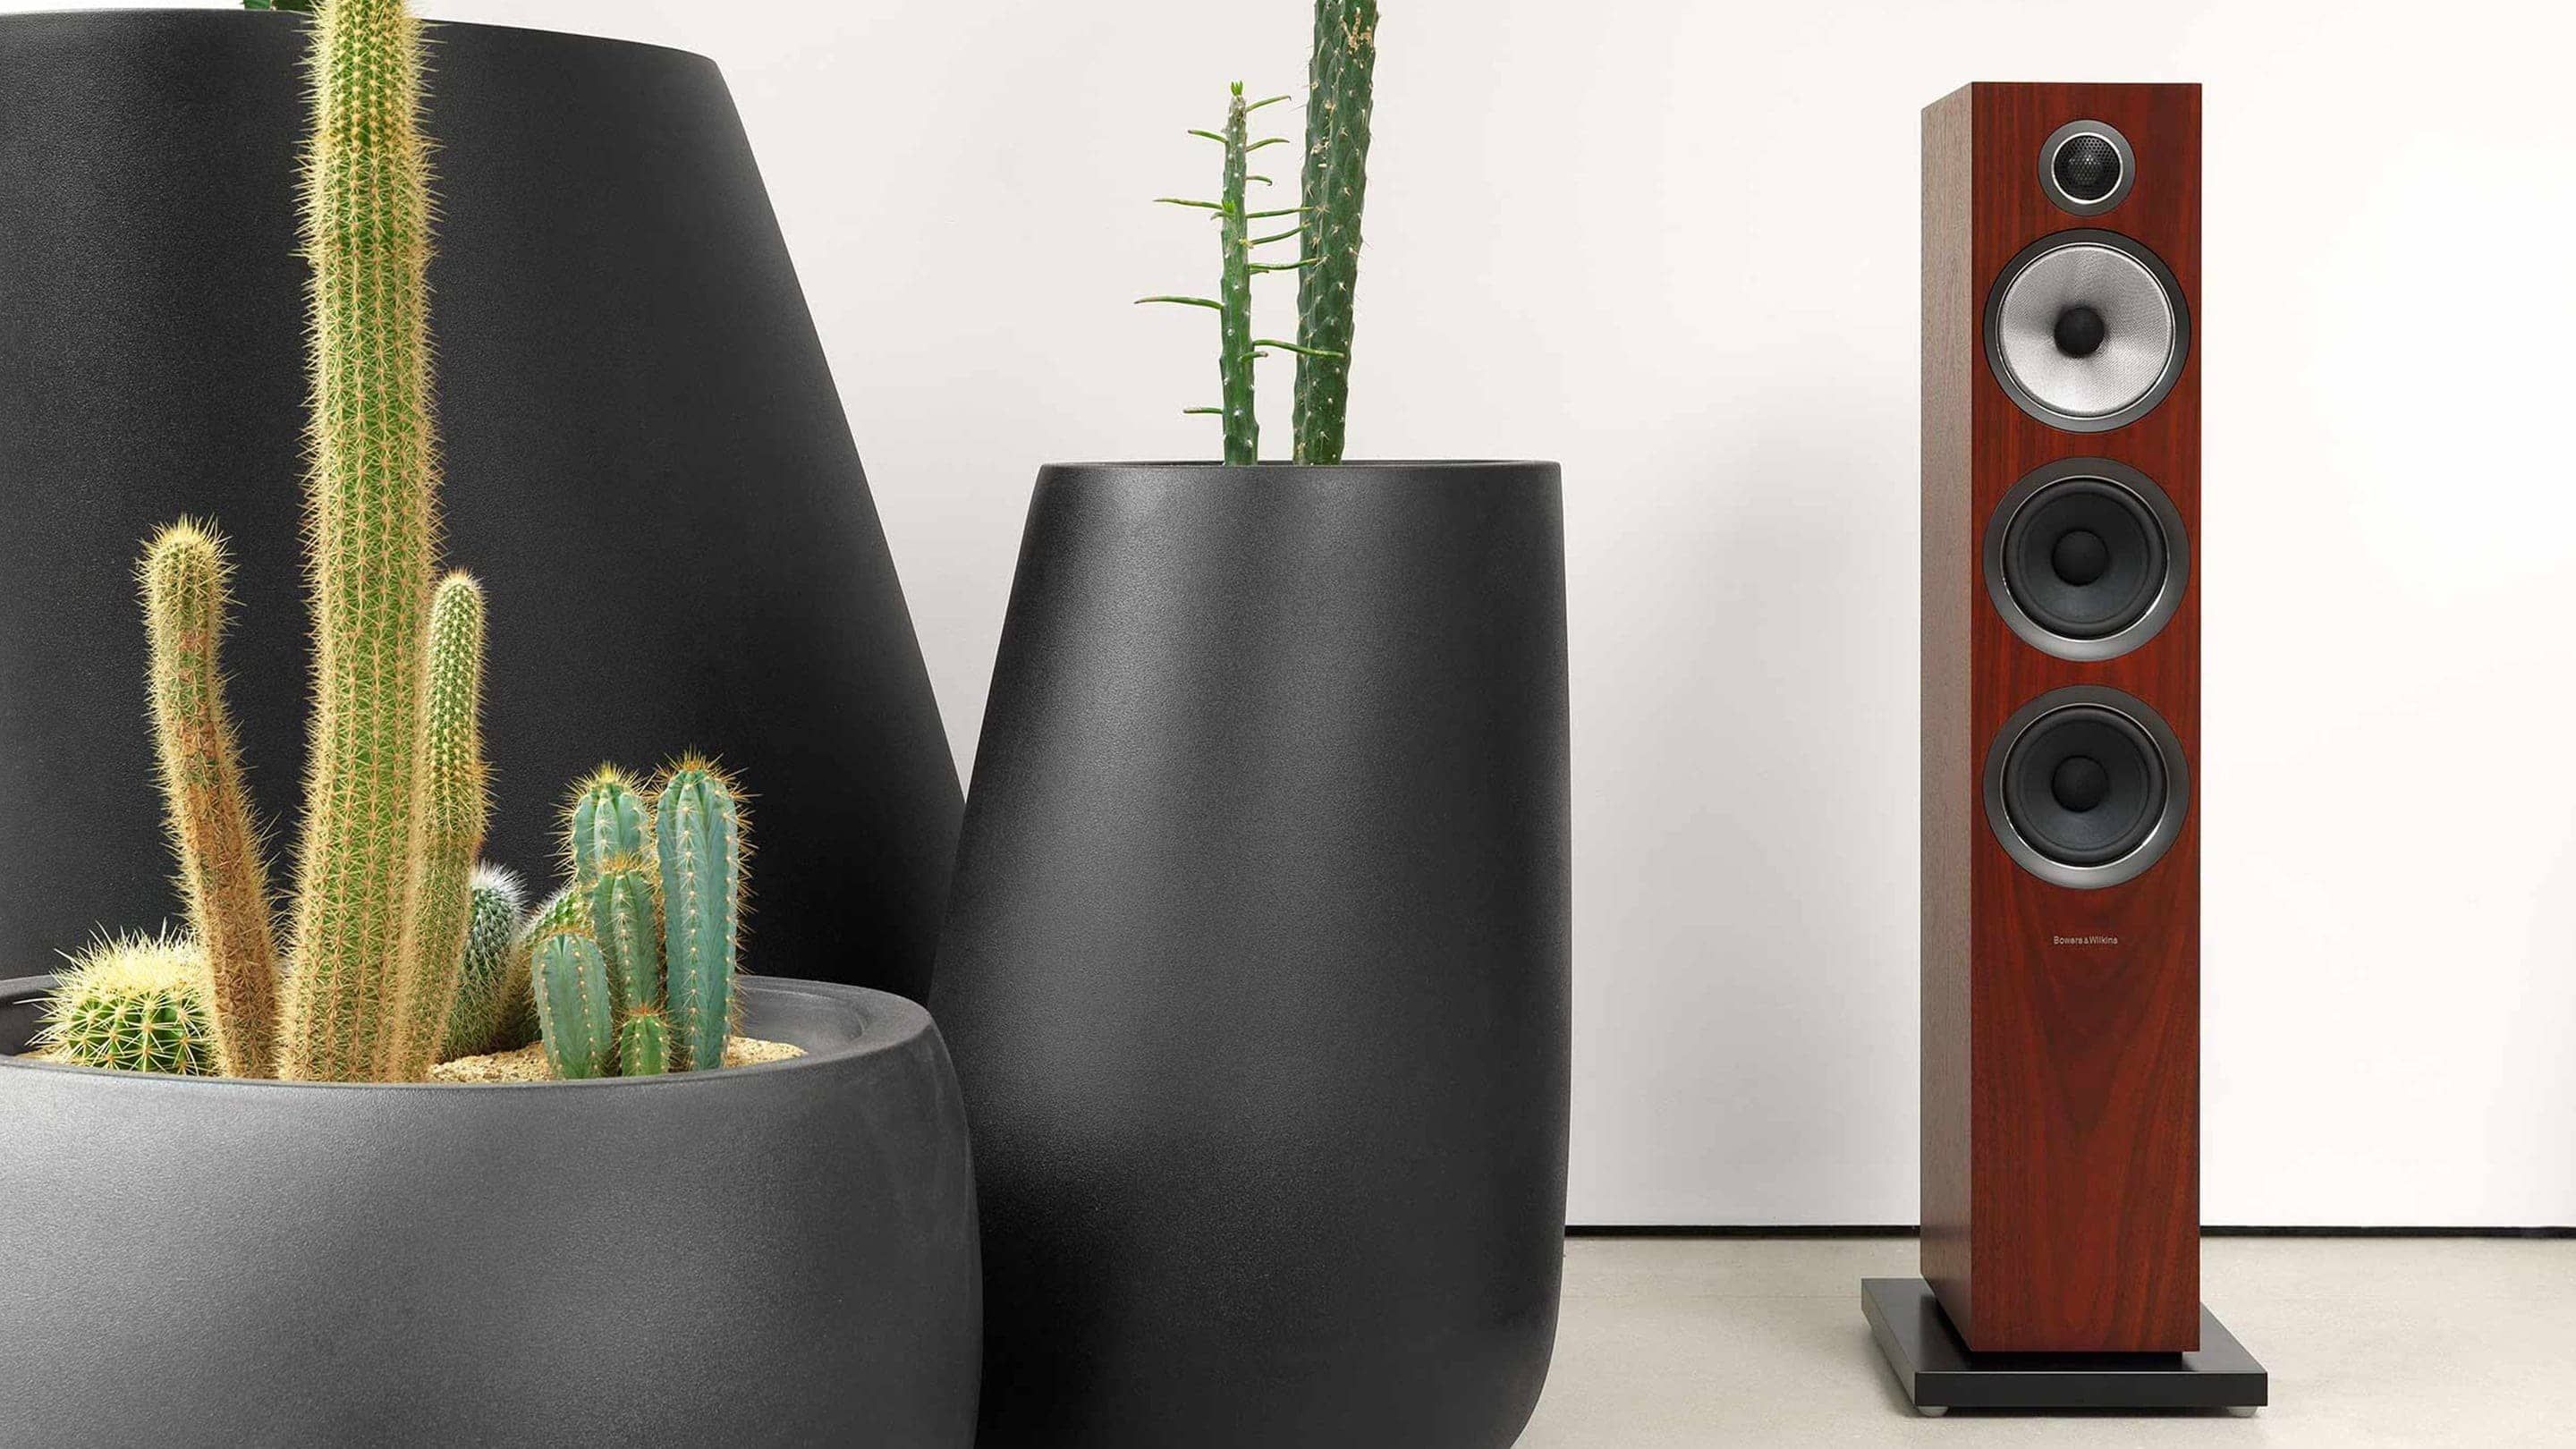 https://lamarque.fillion.ca/wp-content/uploads/2019/04/4-1-d-704-s2-700-series-2-speakers-rosenut-with-cactus.jpg